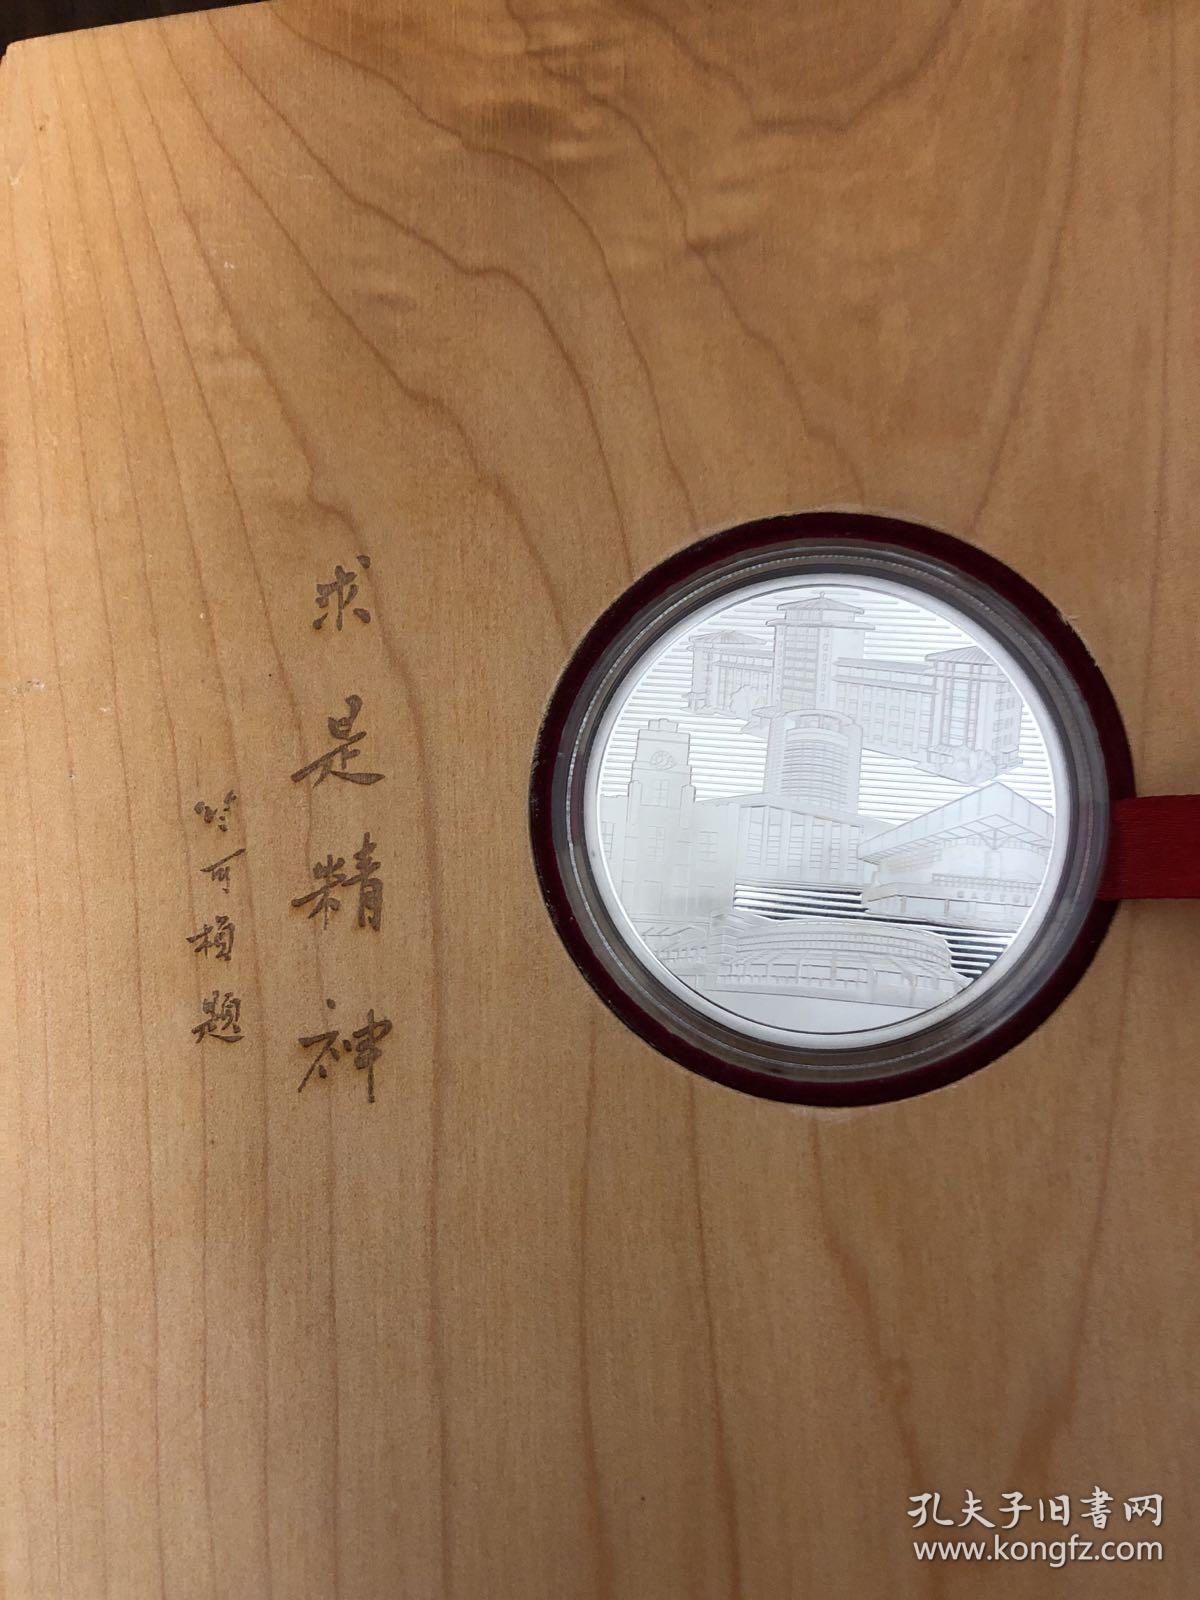 2013浙江大学退休纪念银质纪念章一枚 原木盒设计的高档大气